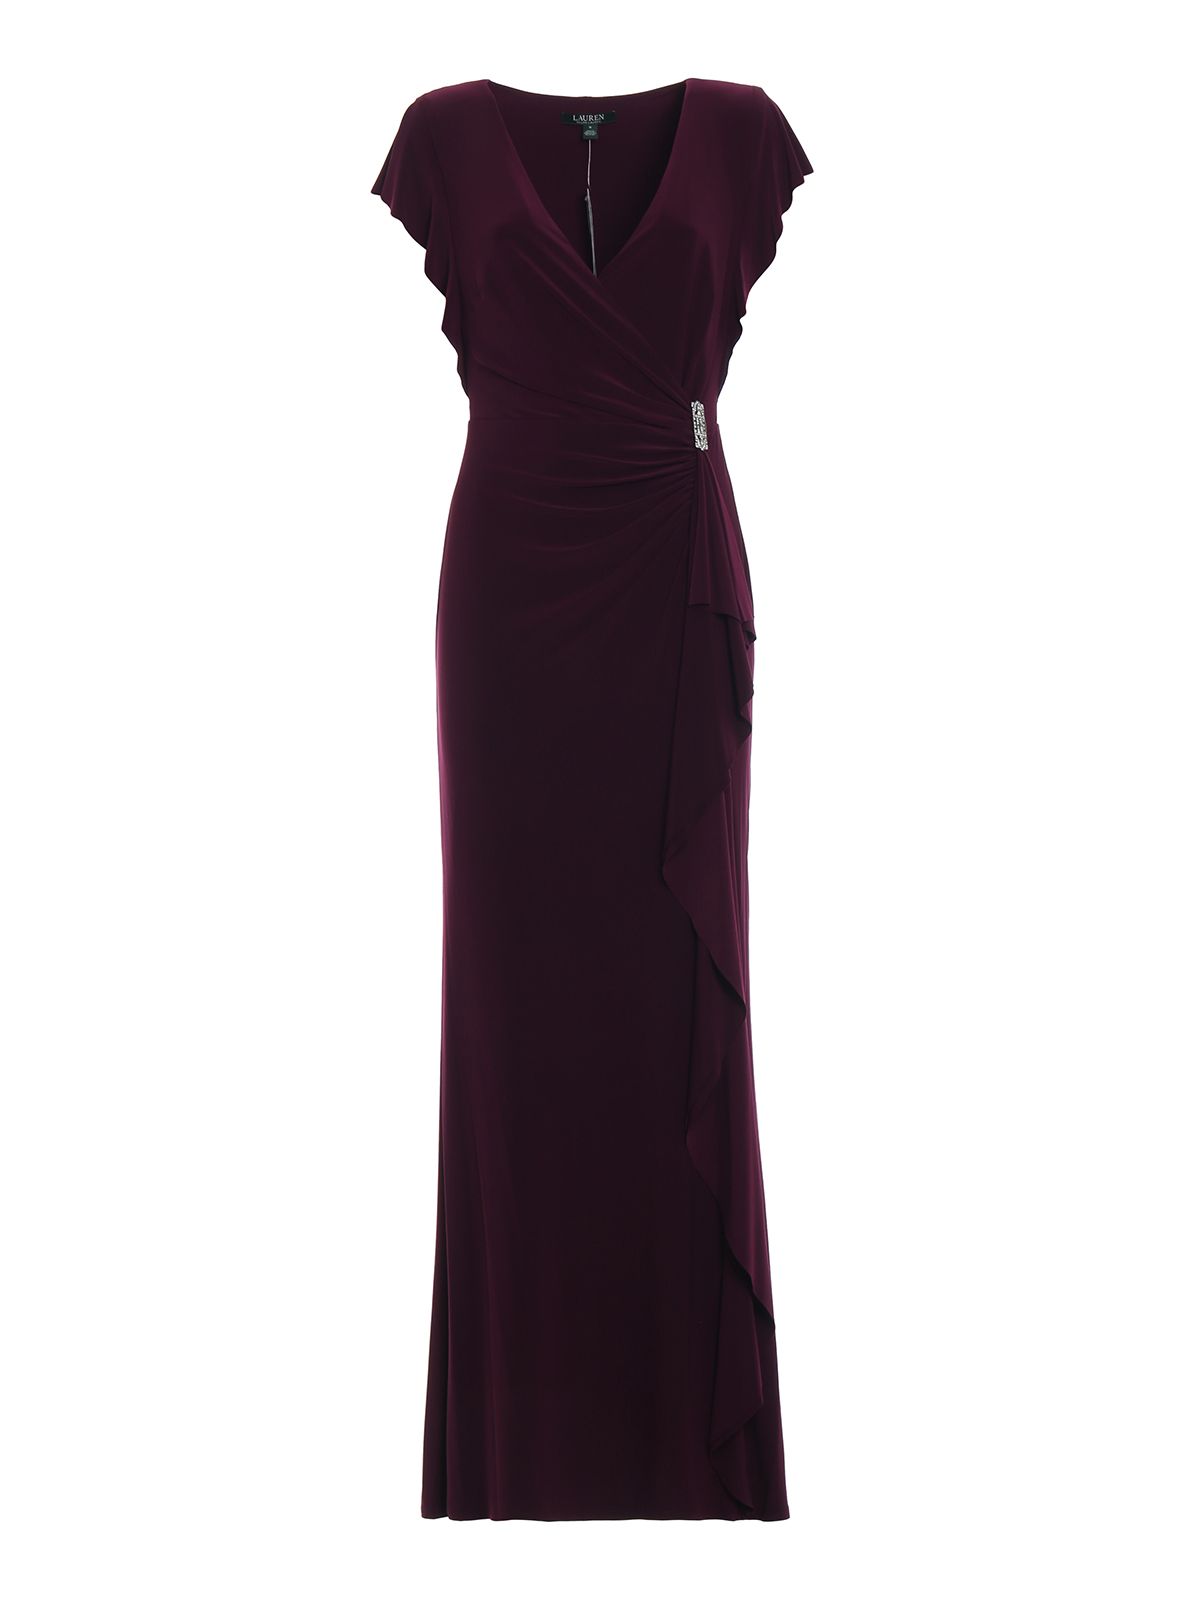 ralph lauren burgundy dress